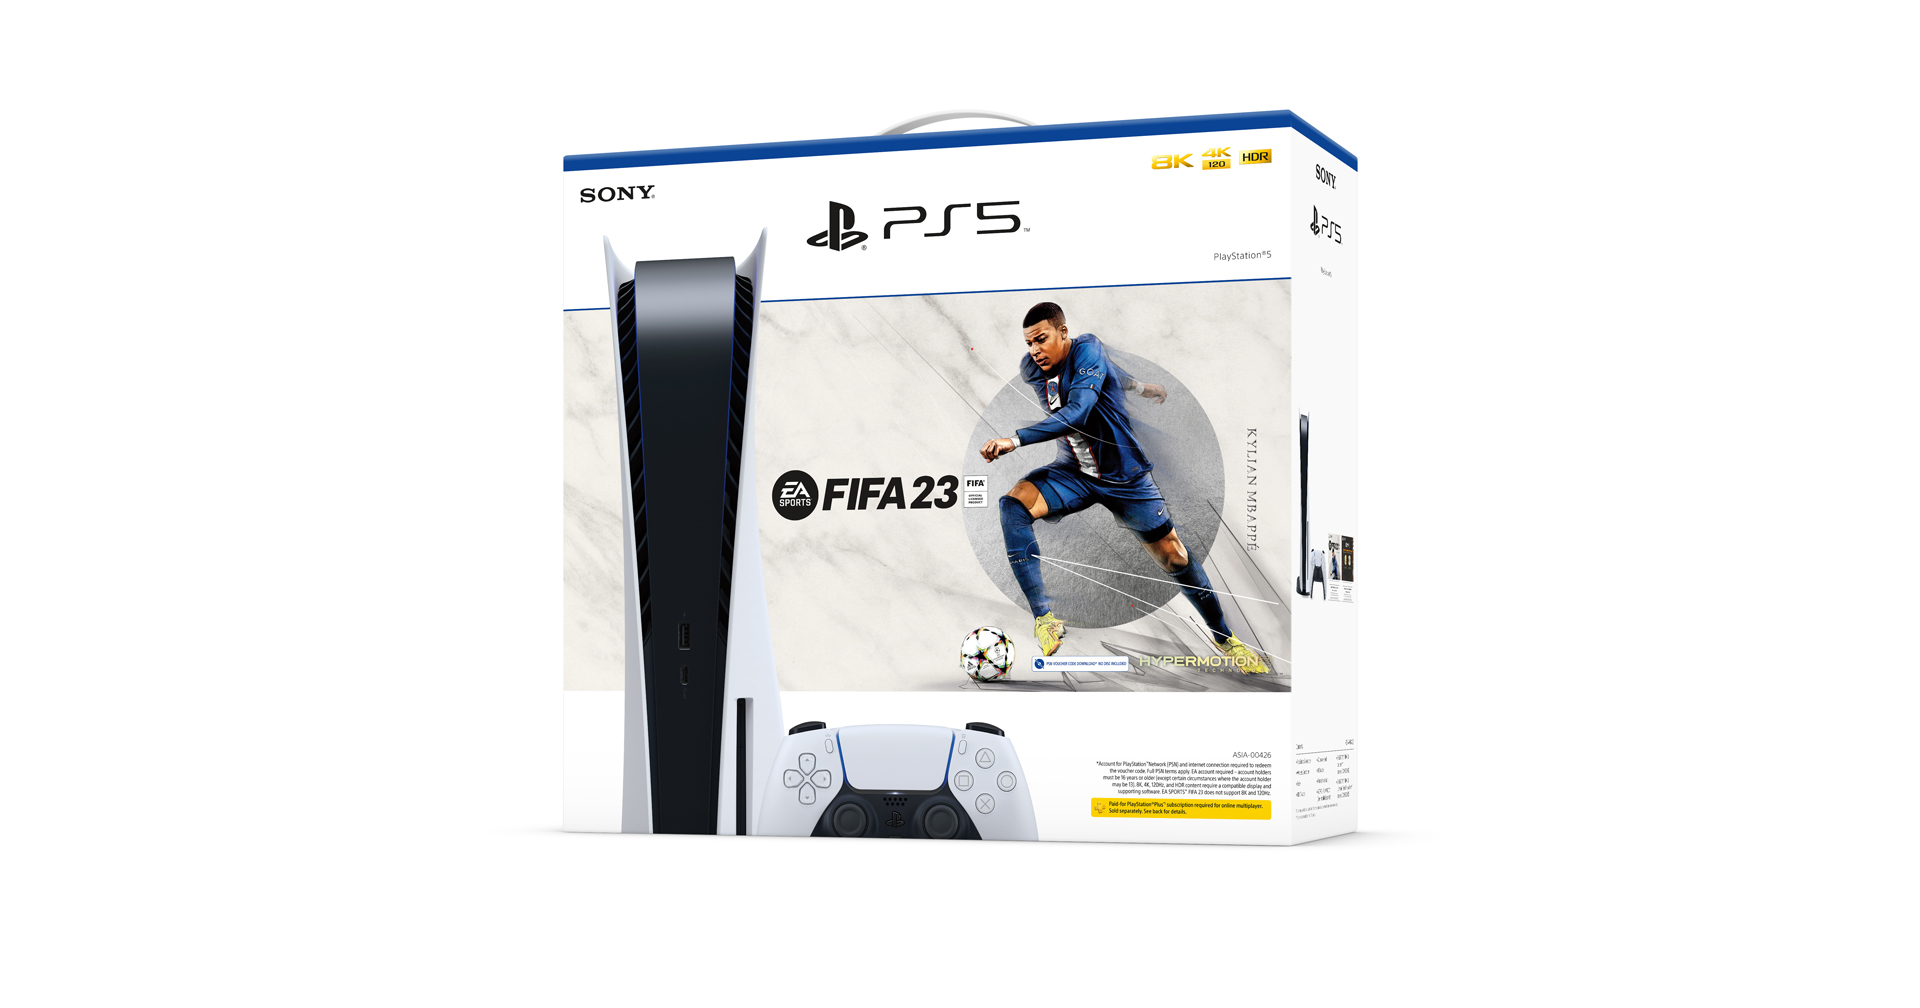 ประกาศวางจำหน่ายแล้ว ชุดเครื่องเกมบันเดิล PlayStation®5 EA SPORTS™ FIFA 23 ราคา 20,790 บาท 30 กันยายน ศกนี้